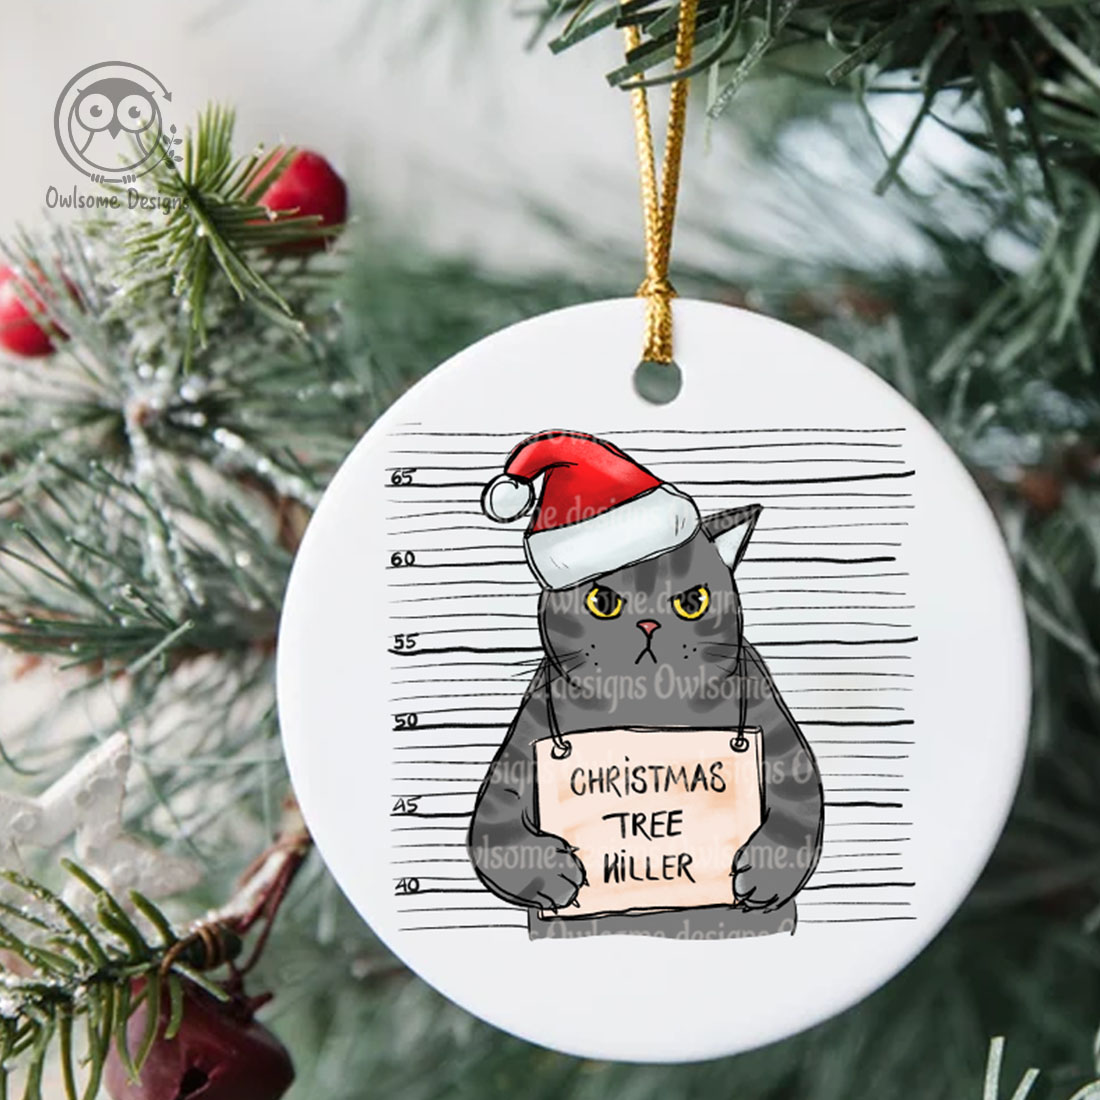 An image of a New Year's toy with a print of a criminal cat in a santa hat.